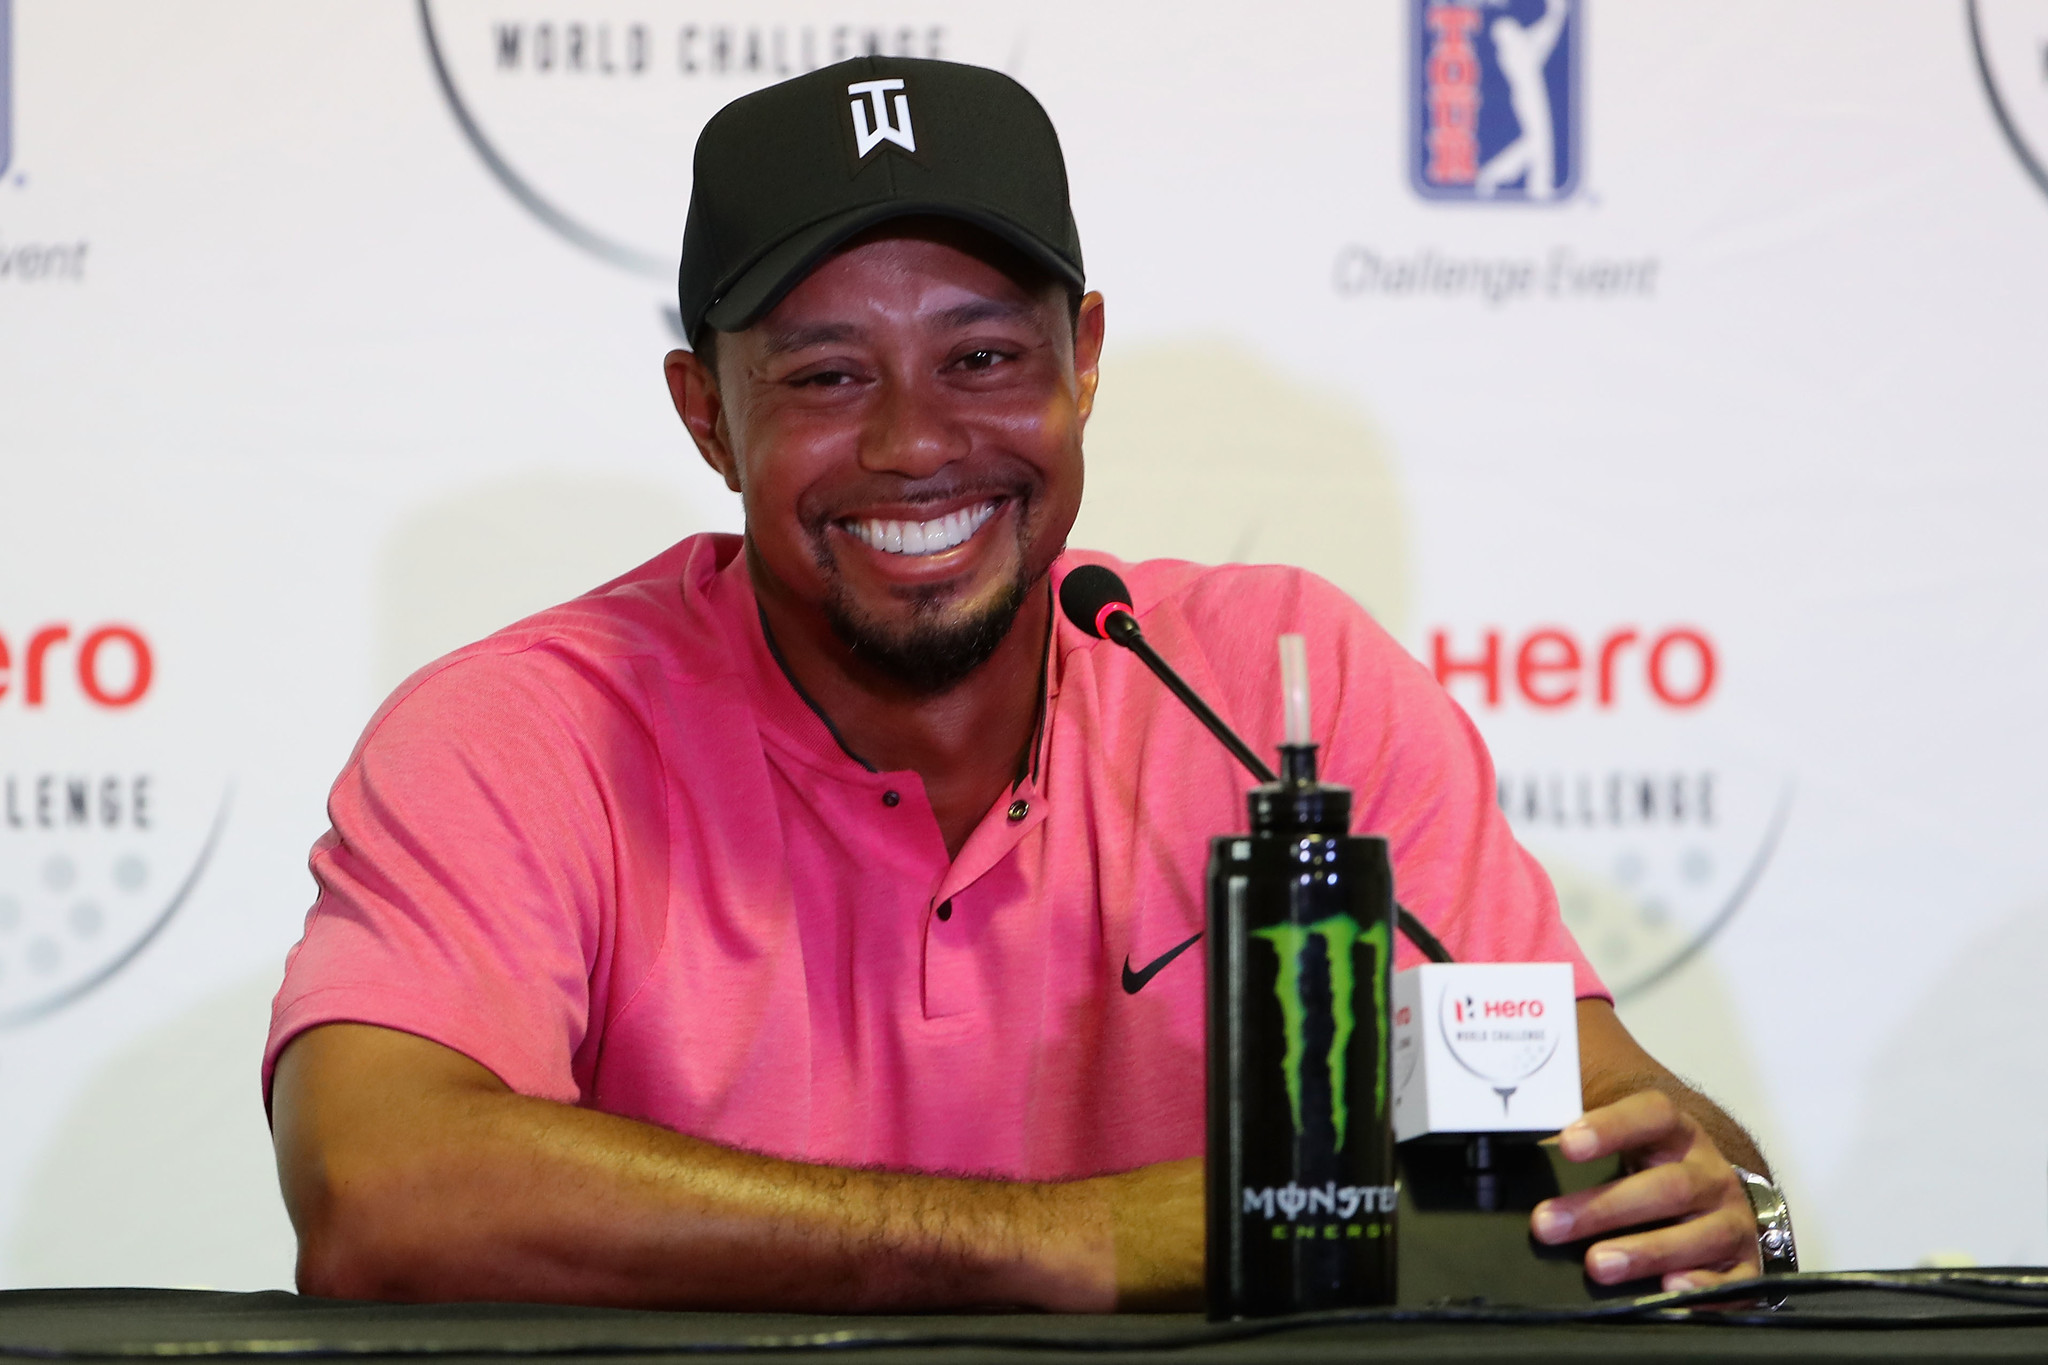 Tiger Woods is back: Do we still care? - Chicago Tribune